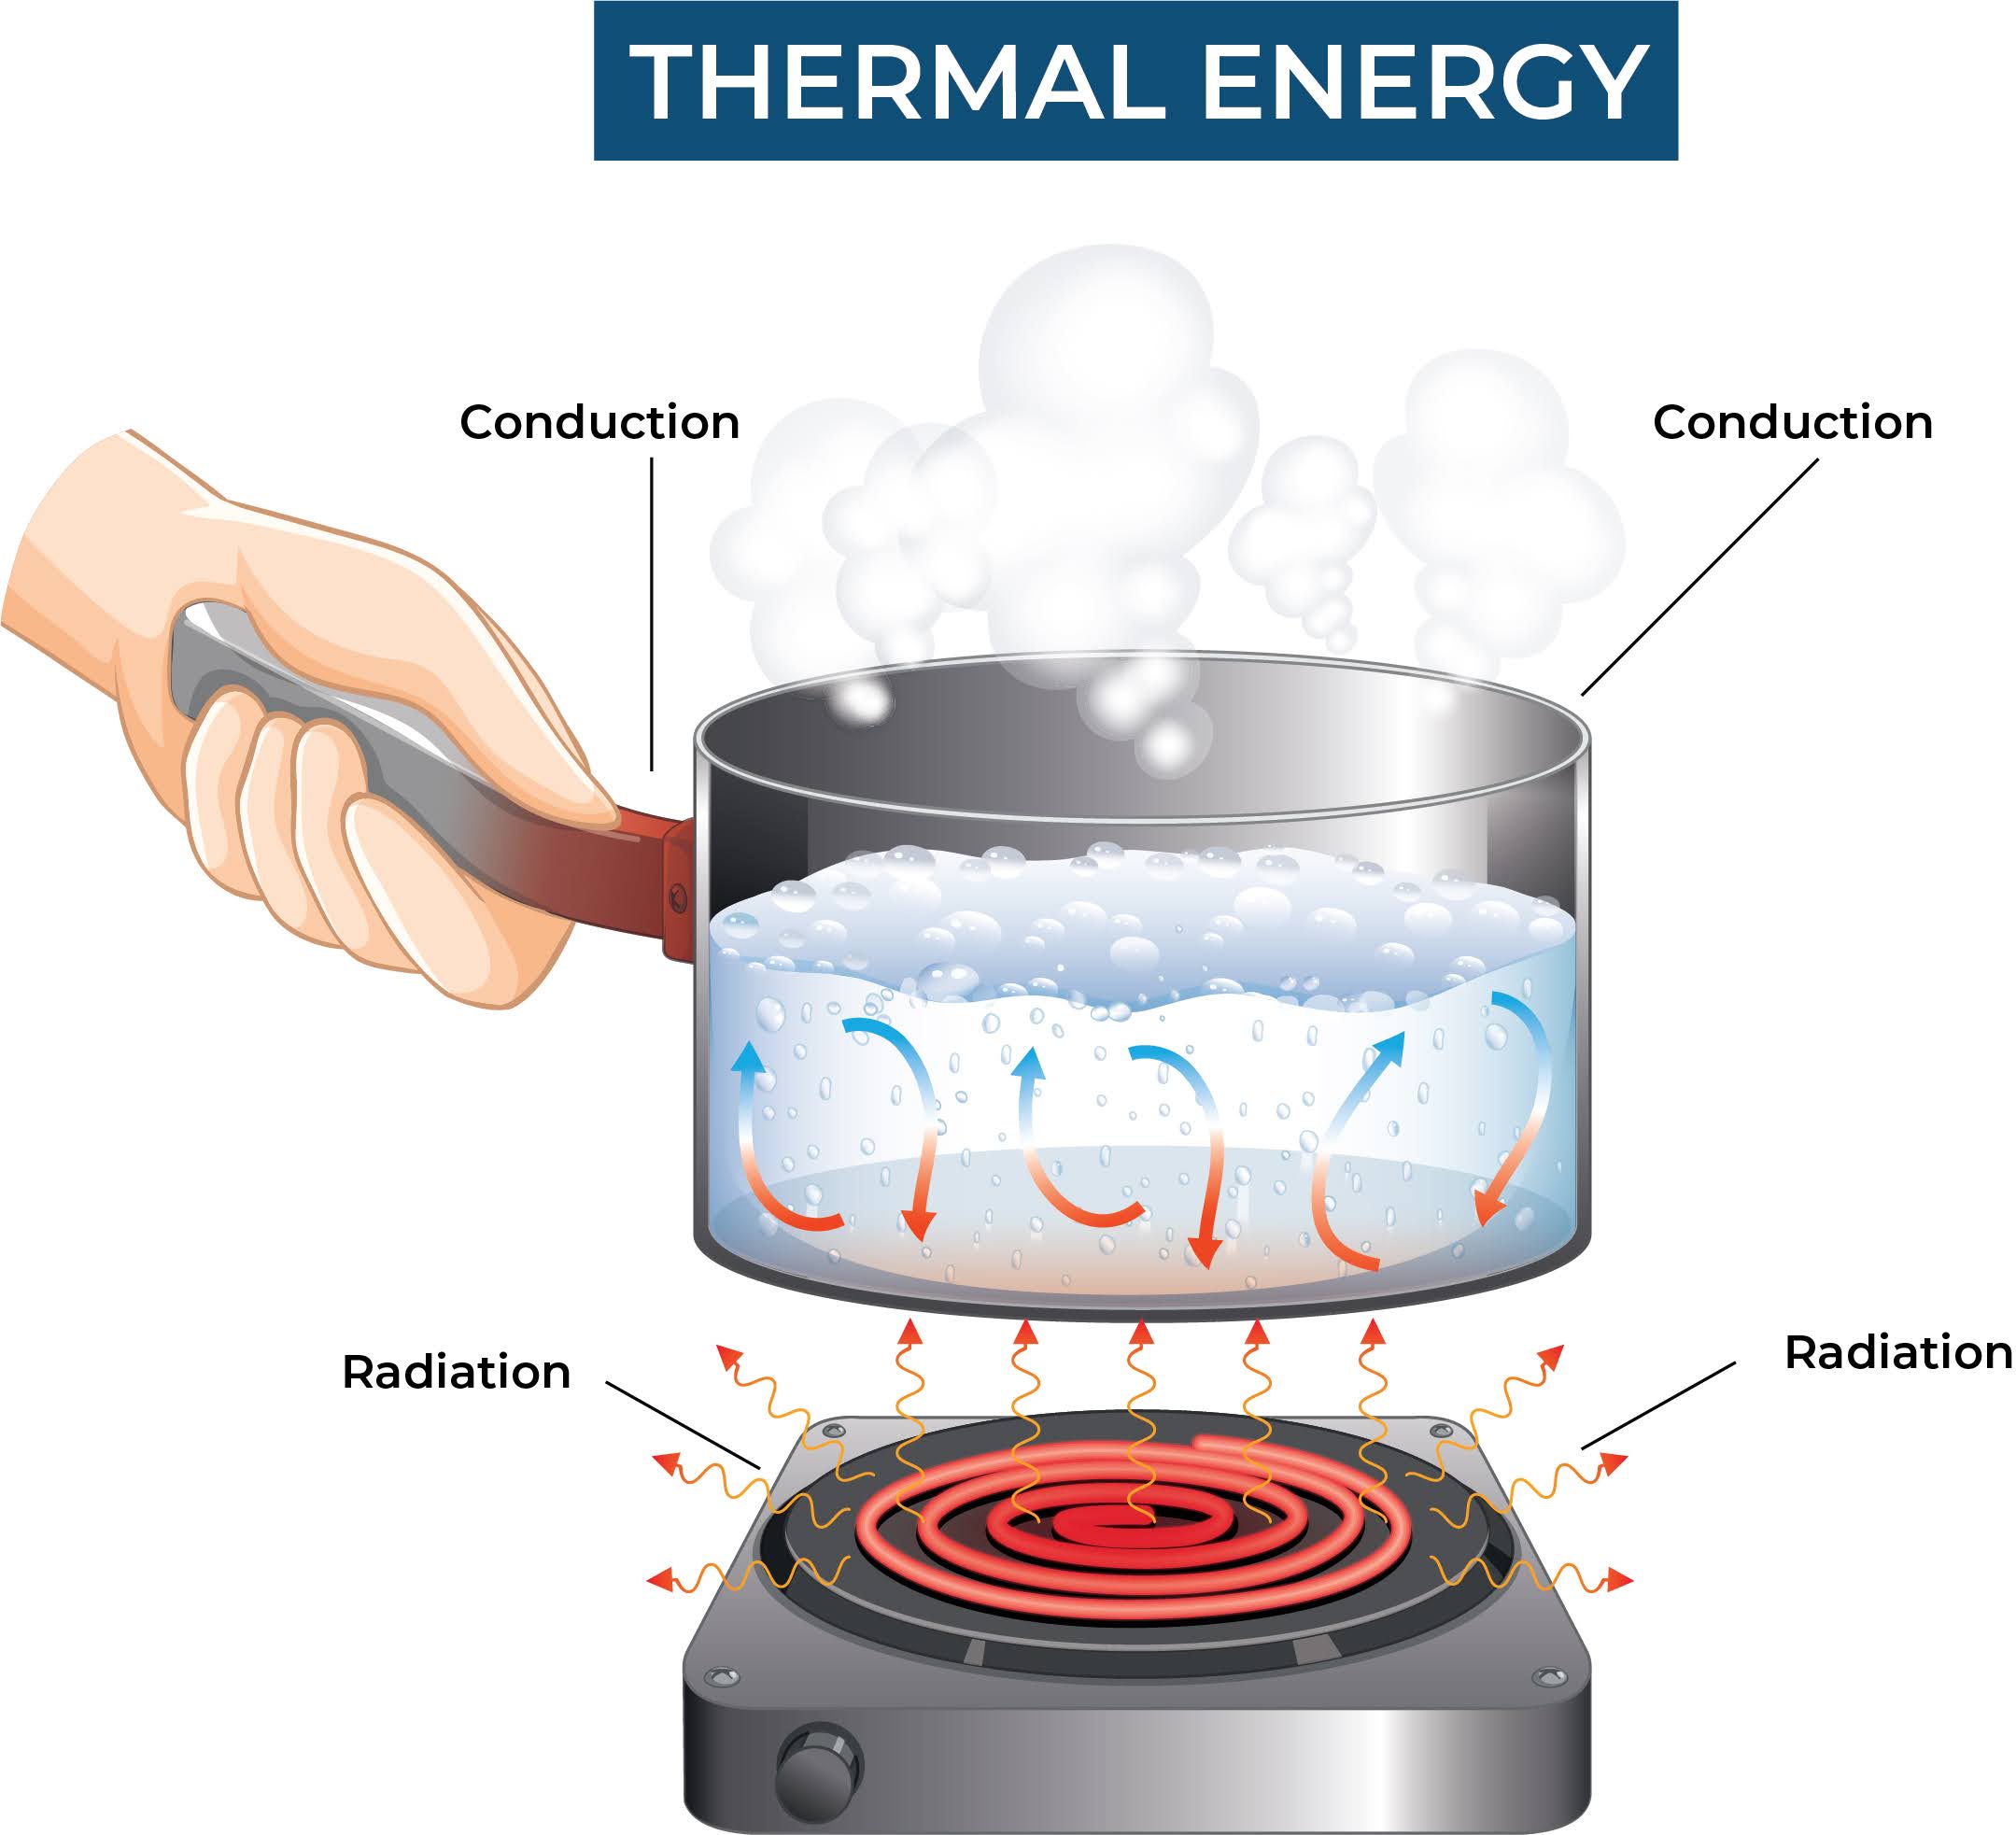 Thermal Eneregy